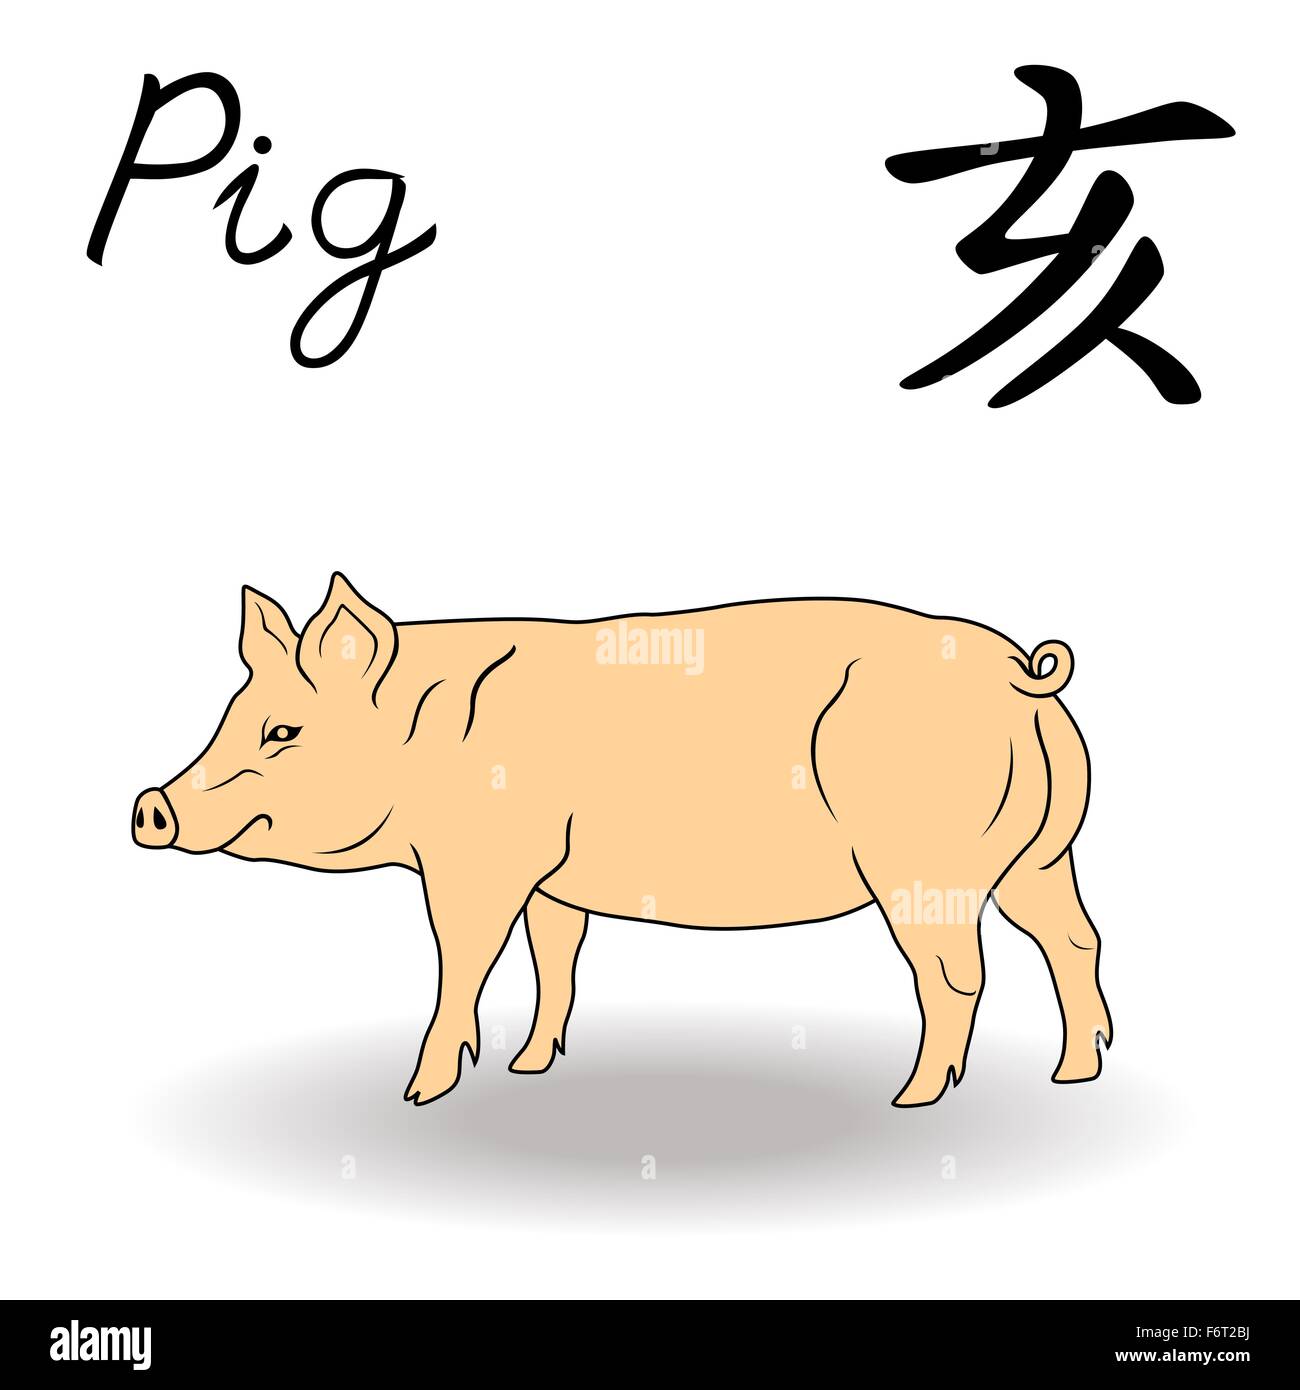 L'Est de signe de zodiaque cochon, symbole de la nouvelle année dans le calendrier chinois, à la main des illustrations vectorielles isolé sur fond blanc Illustration de Vecteur